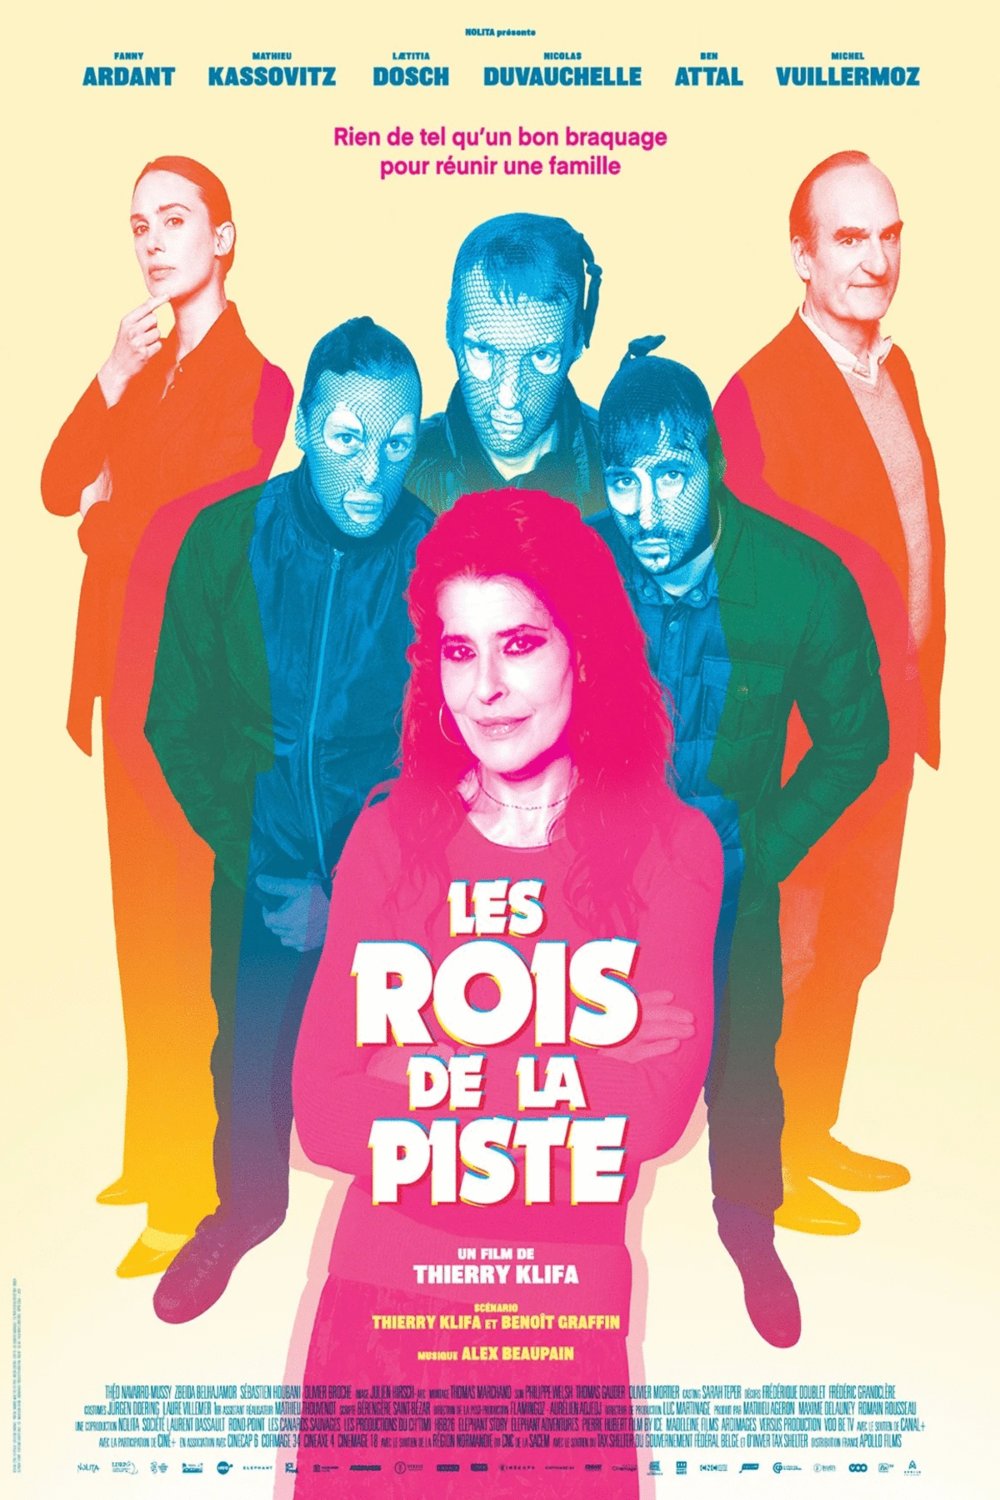 Poster of the movie Les Rois de la piste